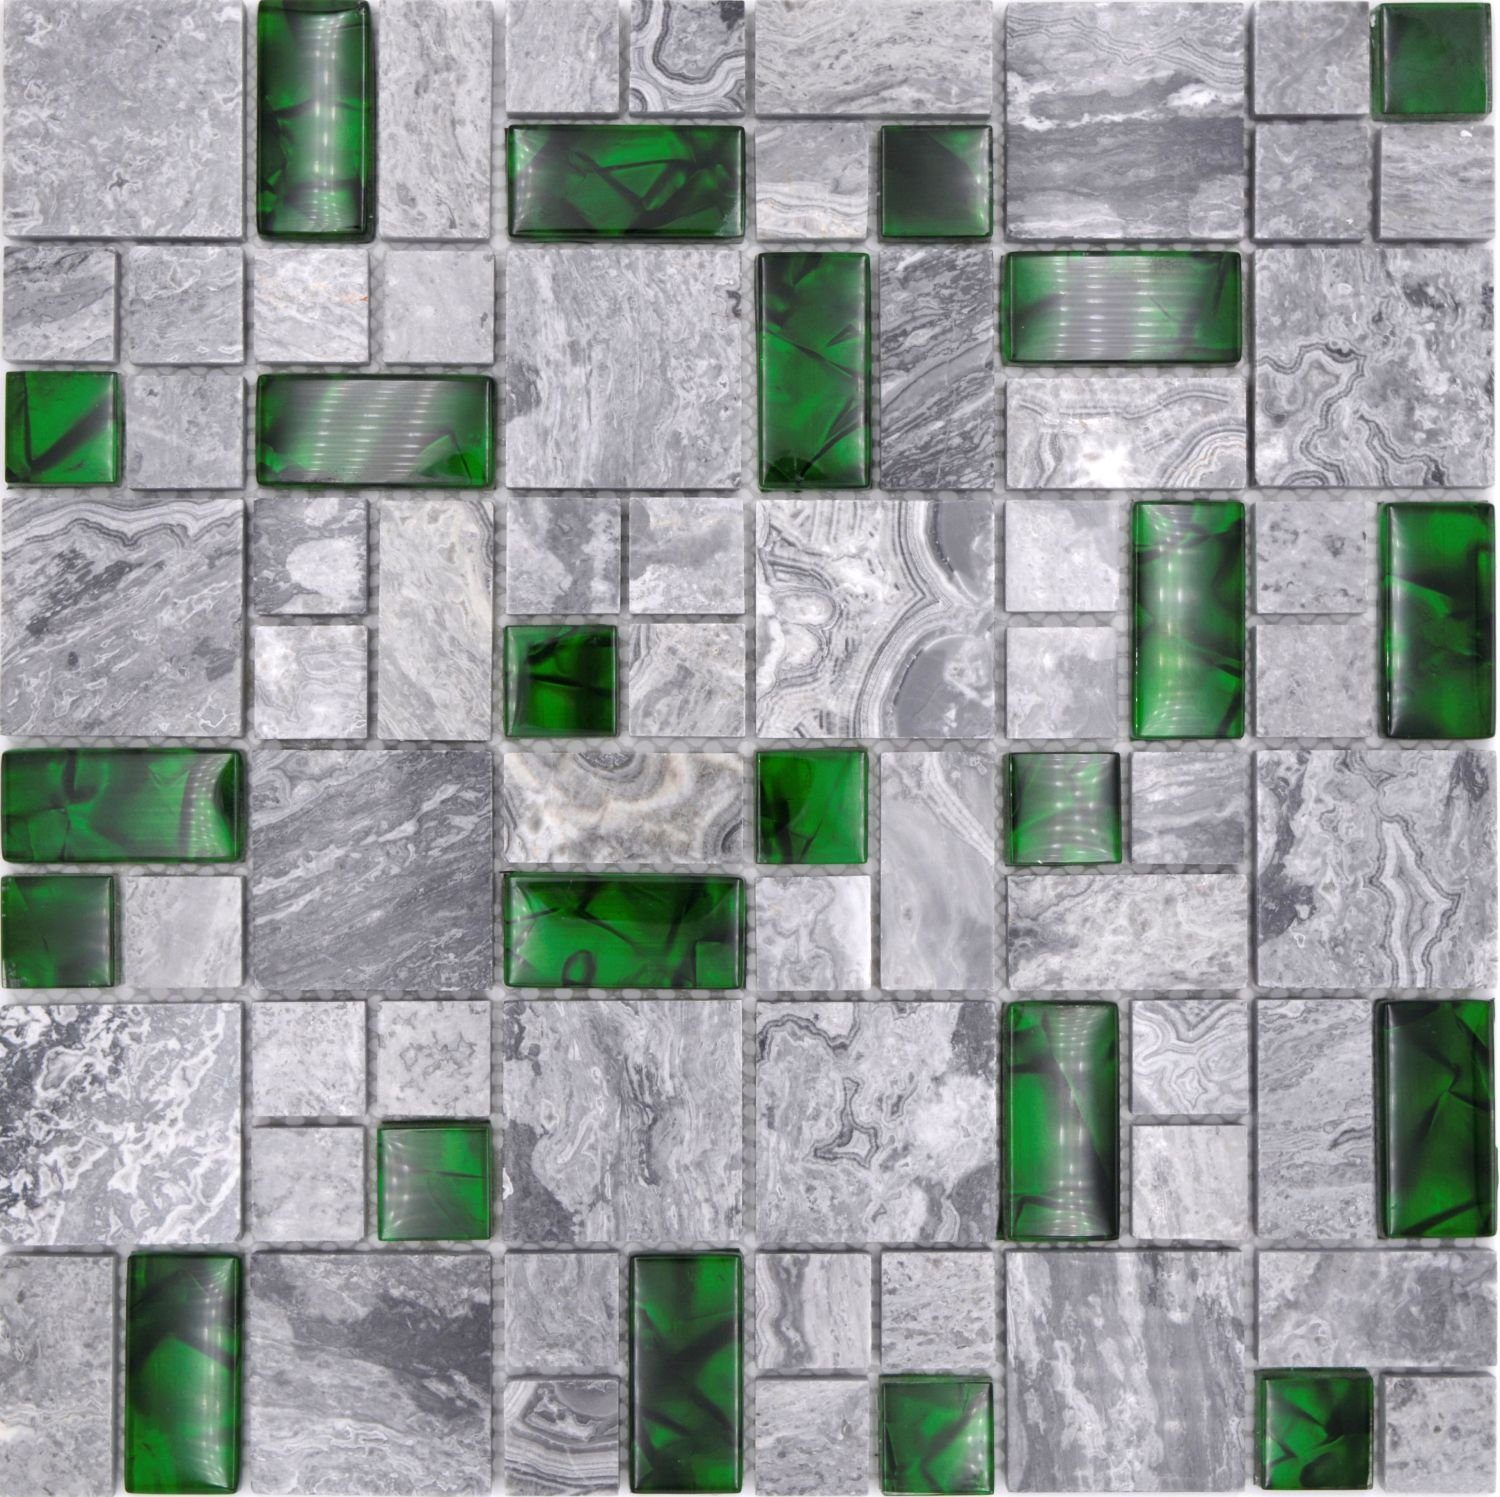 Mosani Mosaikfliesen 0,9m² Glasmosaik Naturstein Mosaikfliesen grau mit grün glänzend, Set, 10-teilig, Dekorative Wandverkleidung | Fliesen